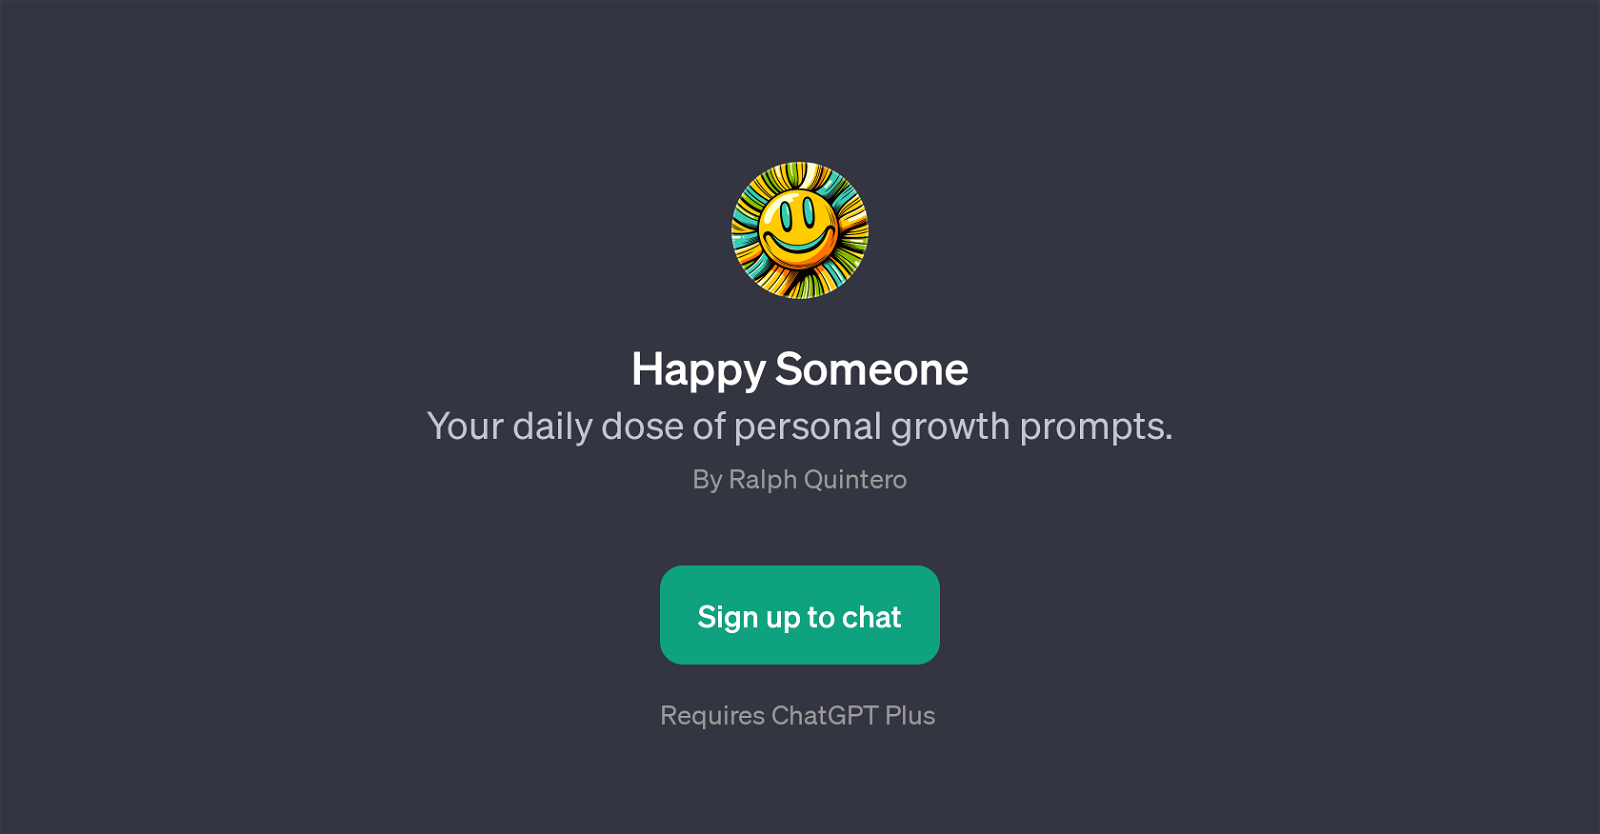 Happy Someone website